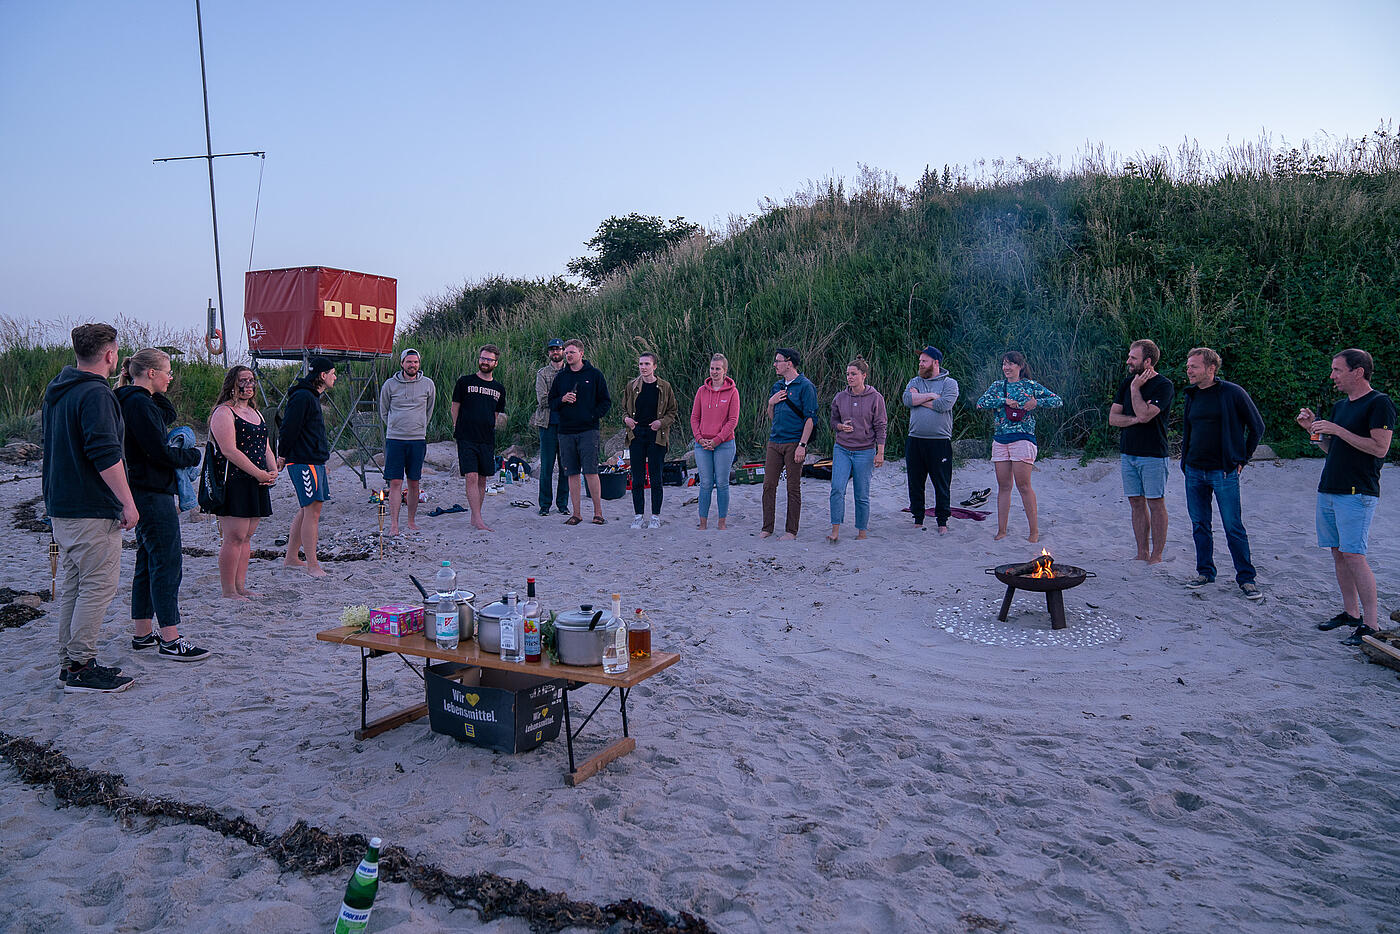 Mitarbeitende von visuellverstehen stehen am Strand in einem großen Kreis. In der Mitte brennt ein Lagerfeuer.